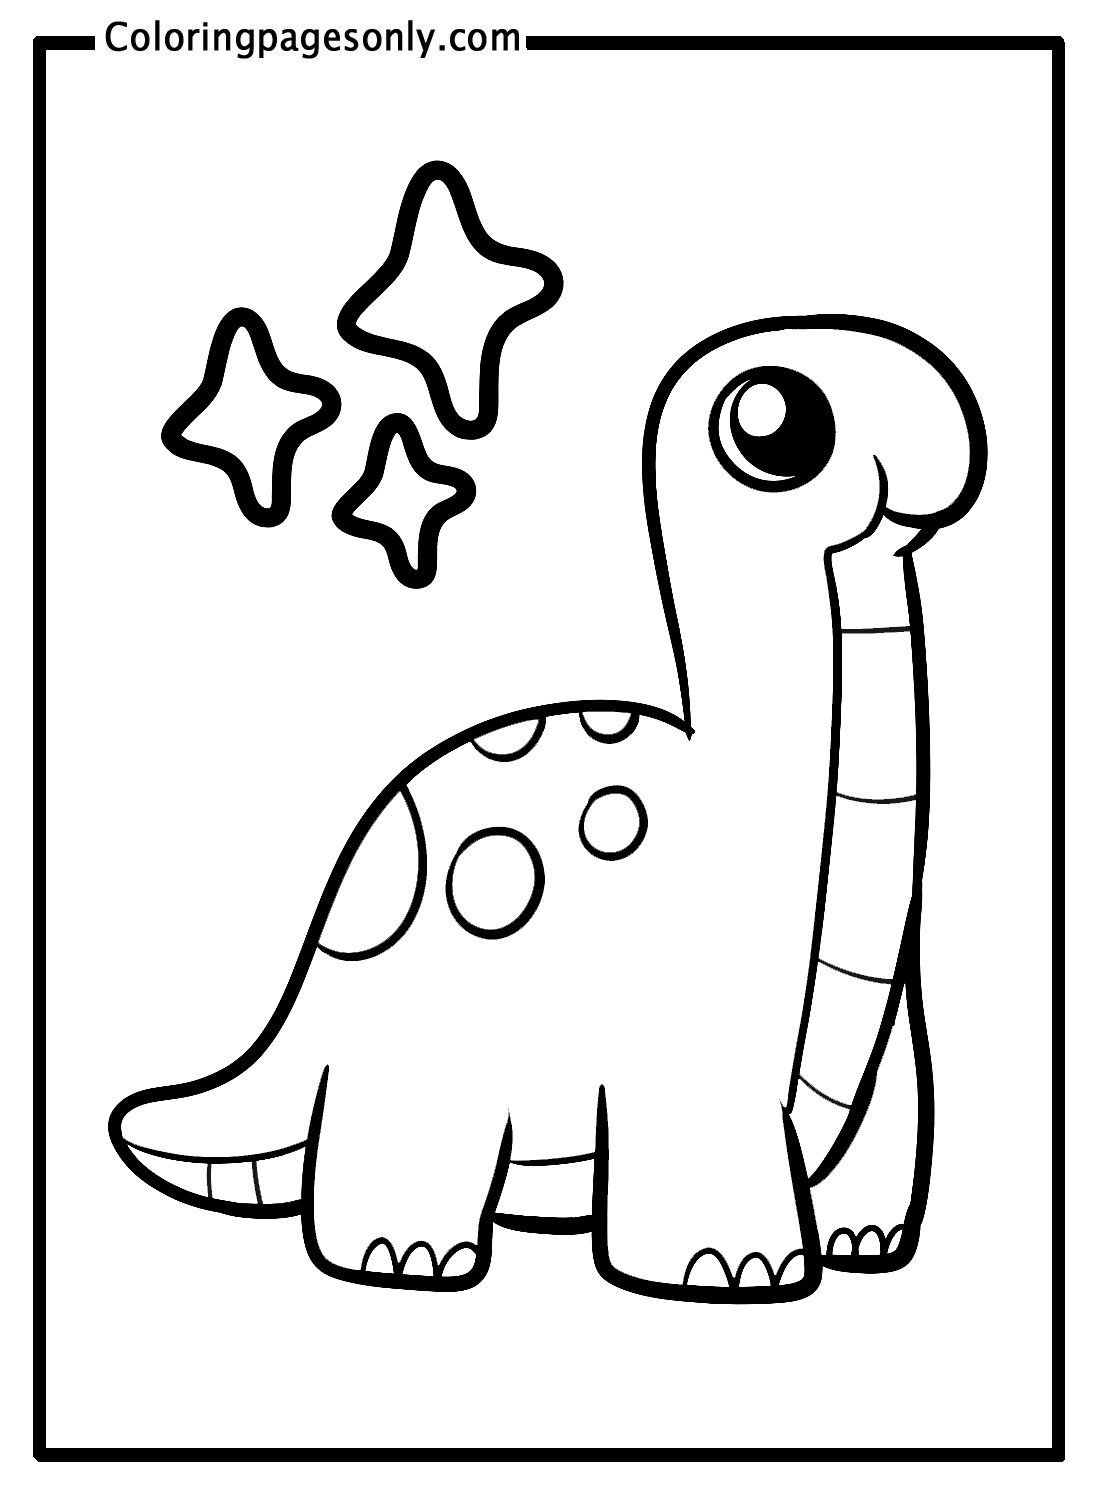 Desenho de dinossauro fofo do Brachiosaurus